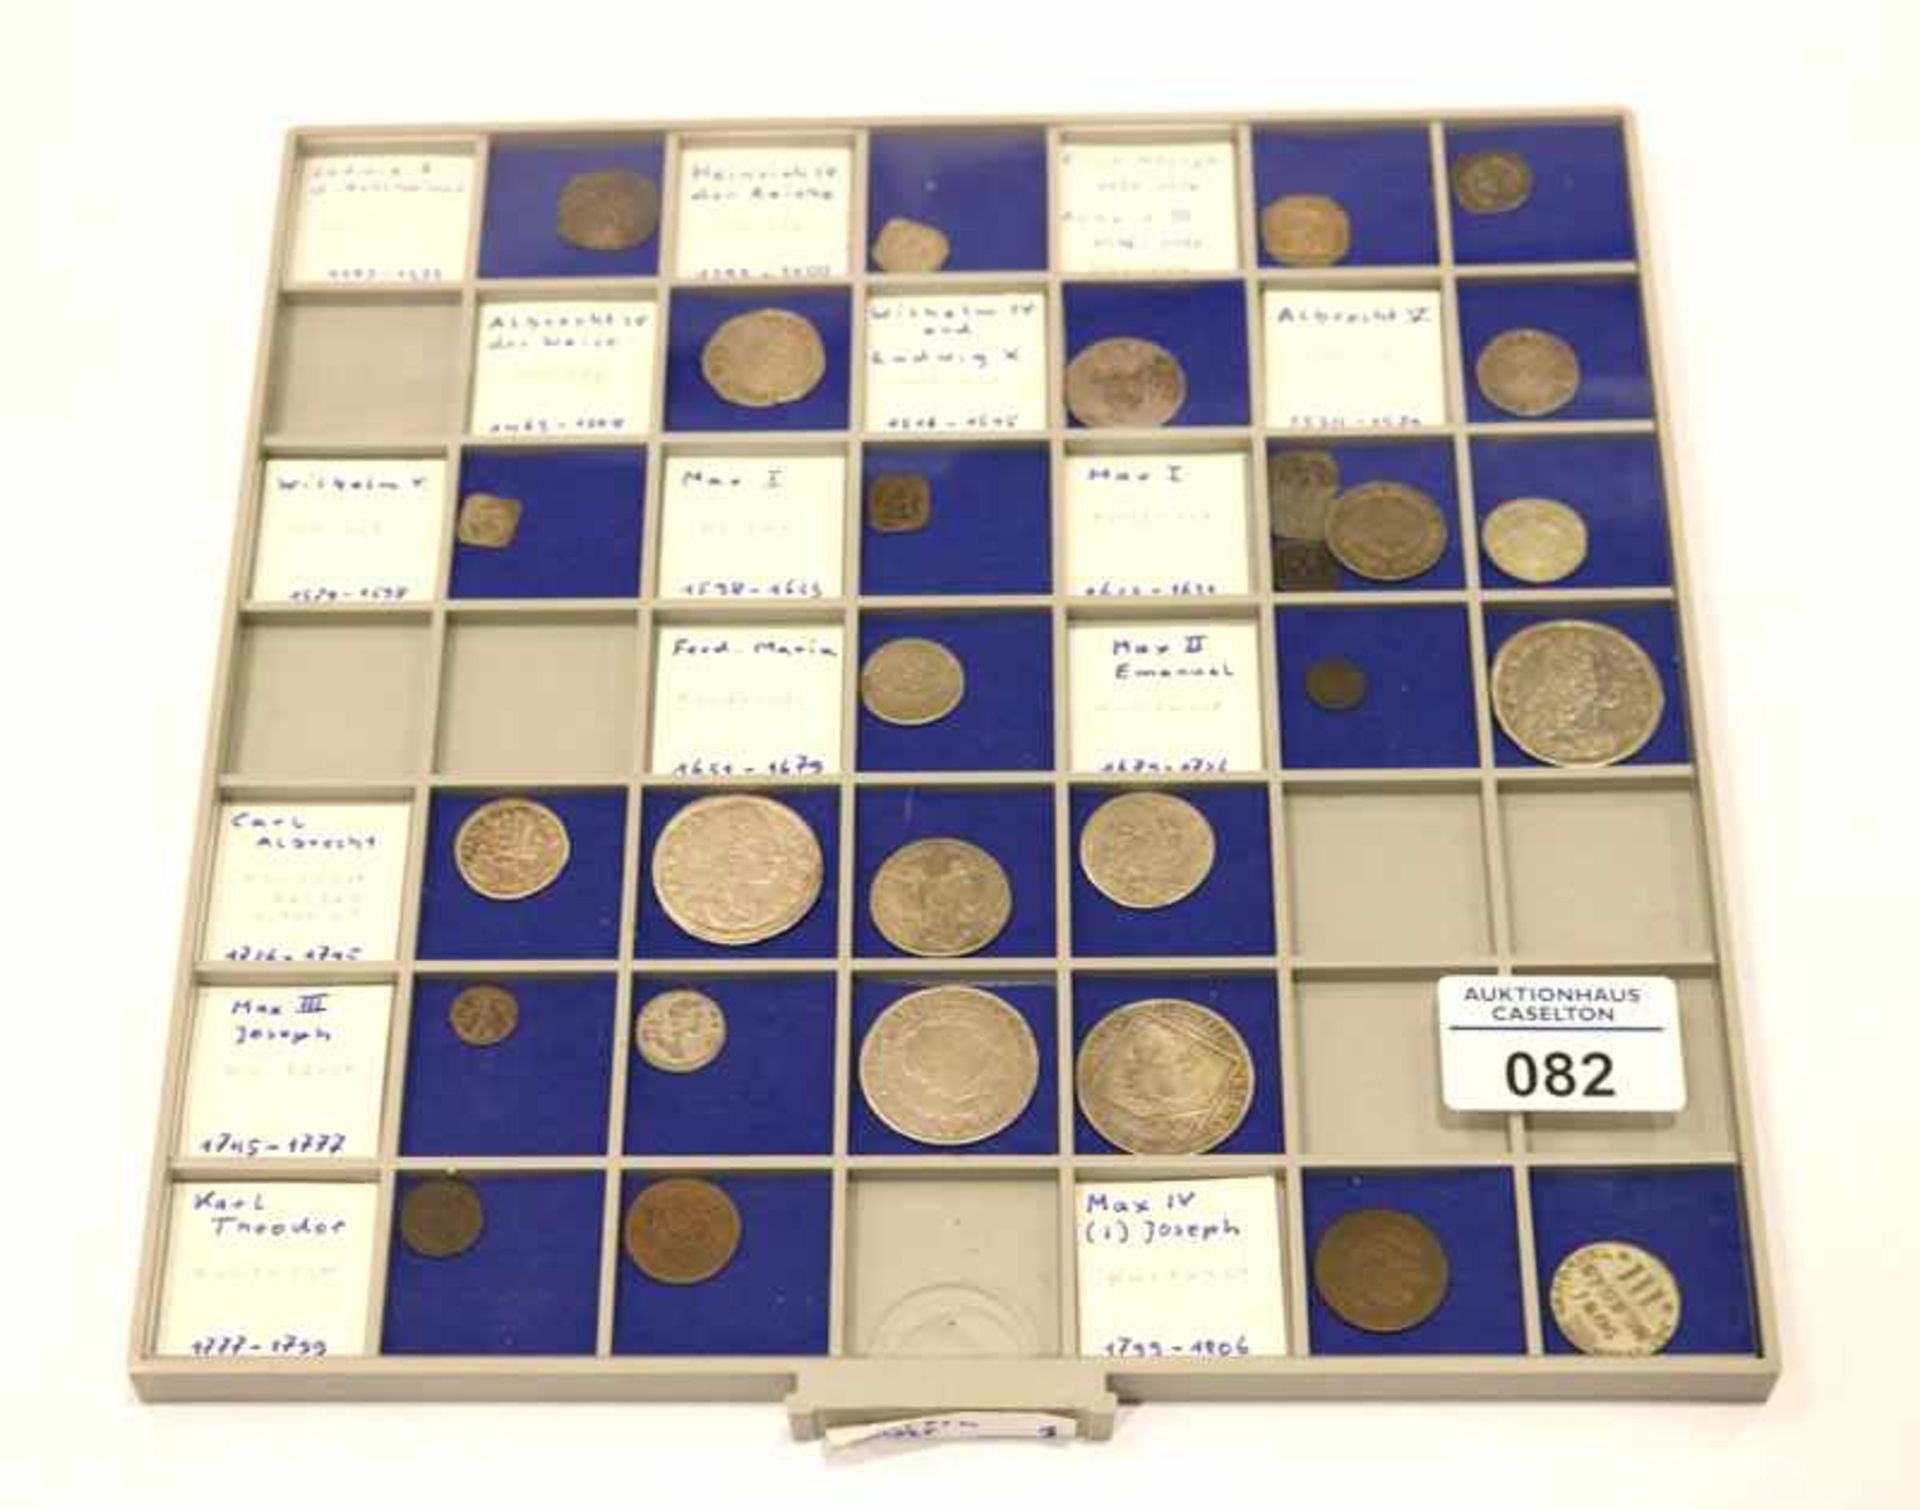 Konvolut von bayerischen Kleinmünzen, ab Ludwig I. bis Max IV Josef